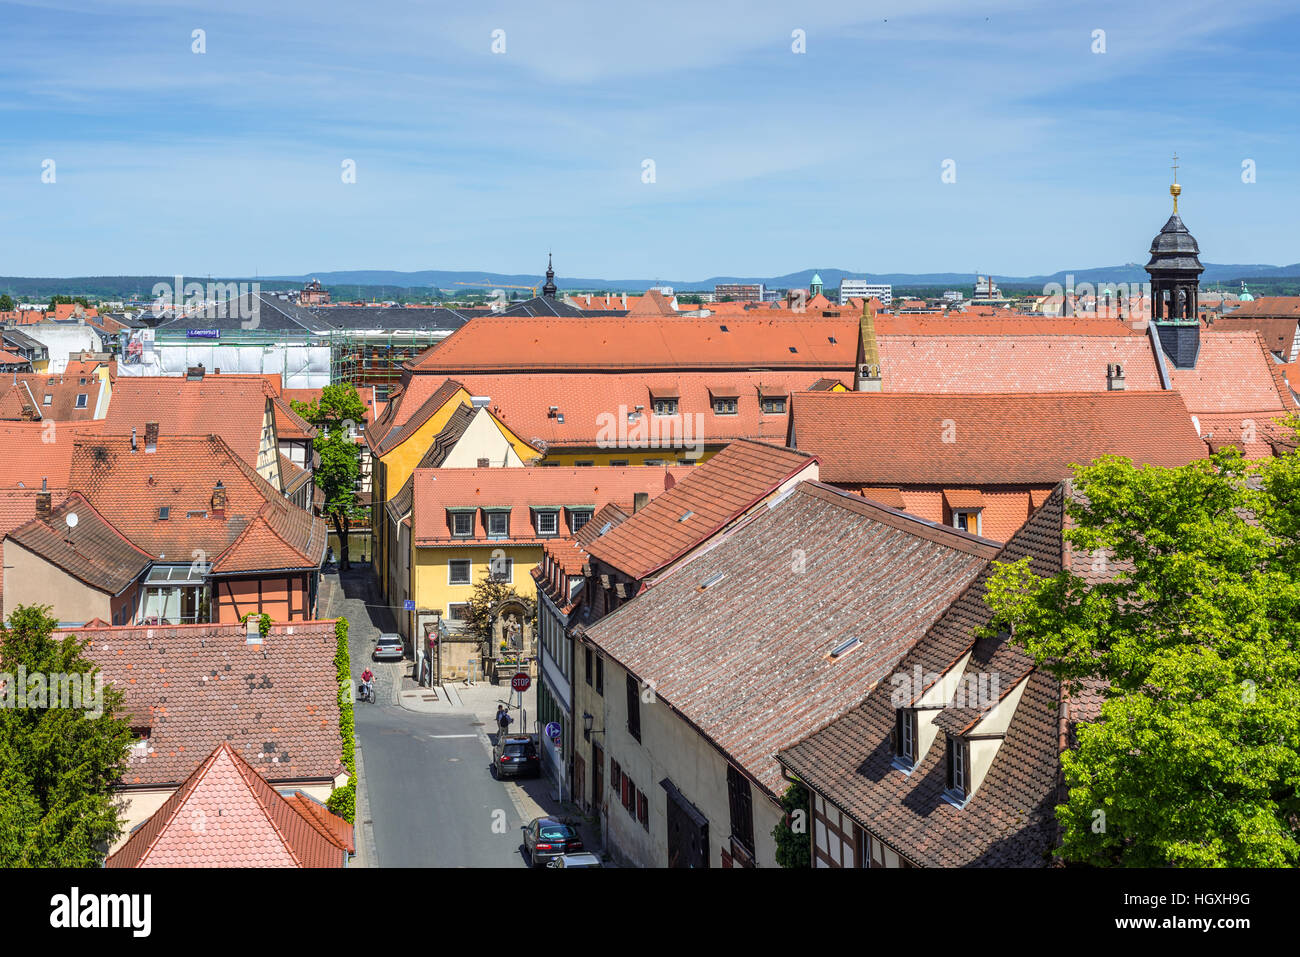 Luftbild von der Architektur der alten Stadt und Straßen der Stadt Bamberg in Bayern, Deutschland Stockfoto